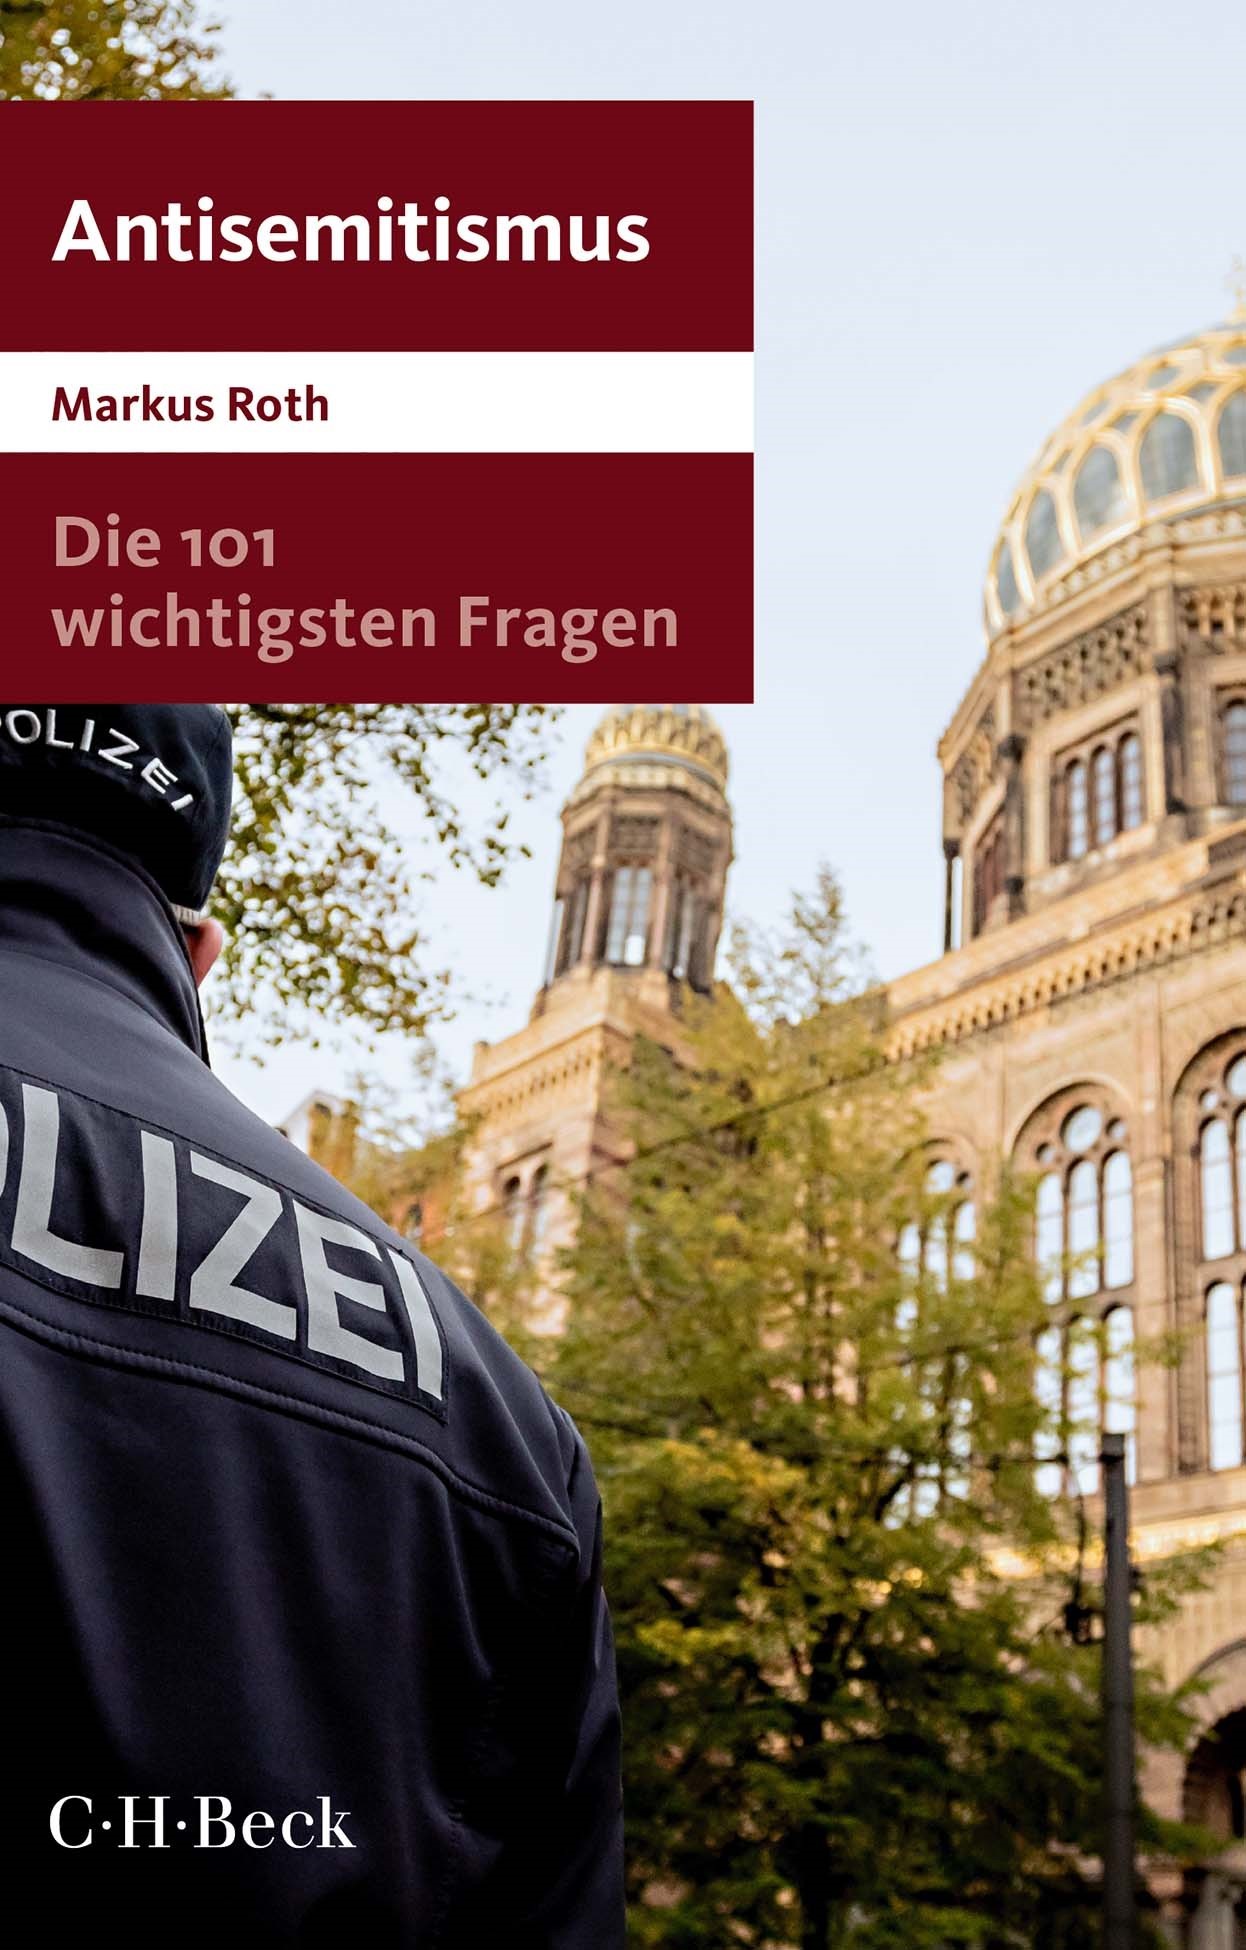 Cover: Roth, Markus, Die 101 wichtigsten Fragen - Antisemitismus